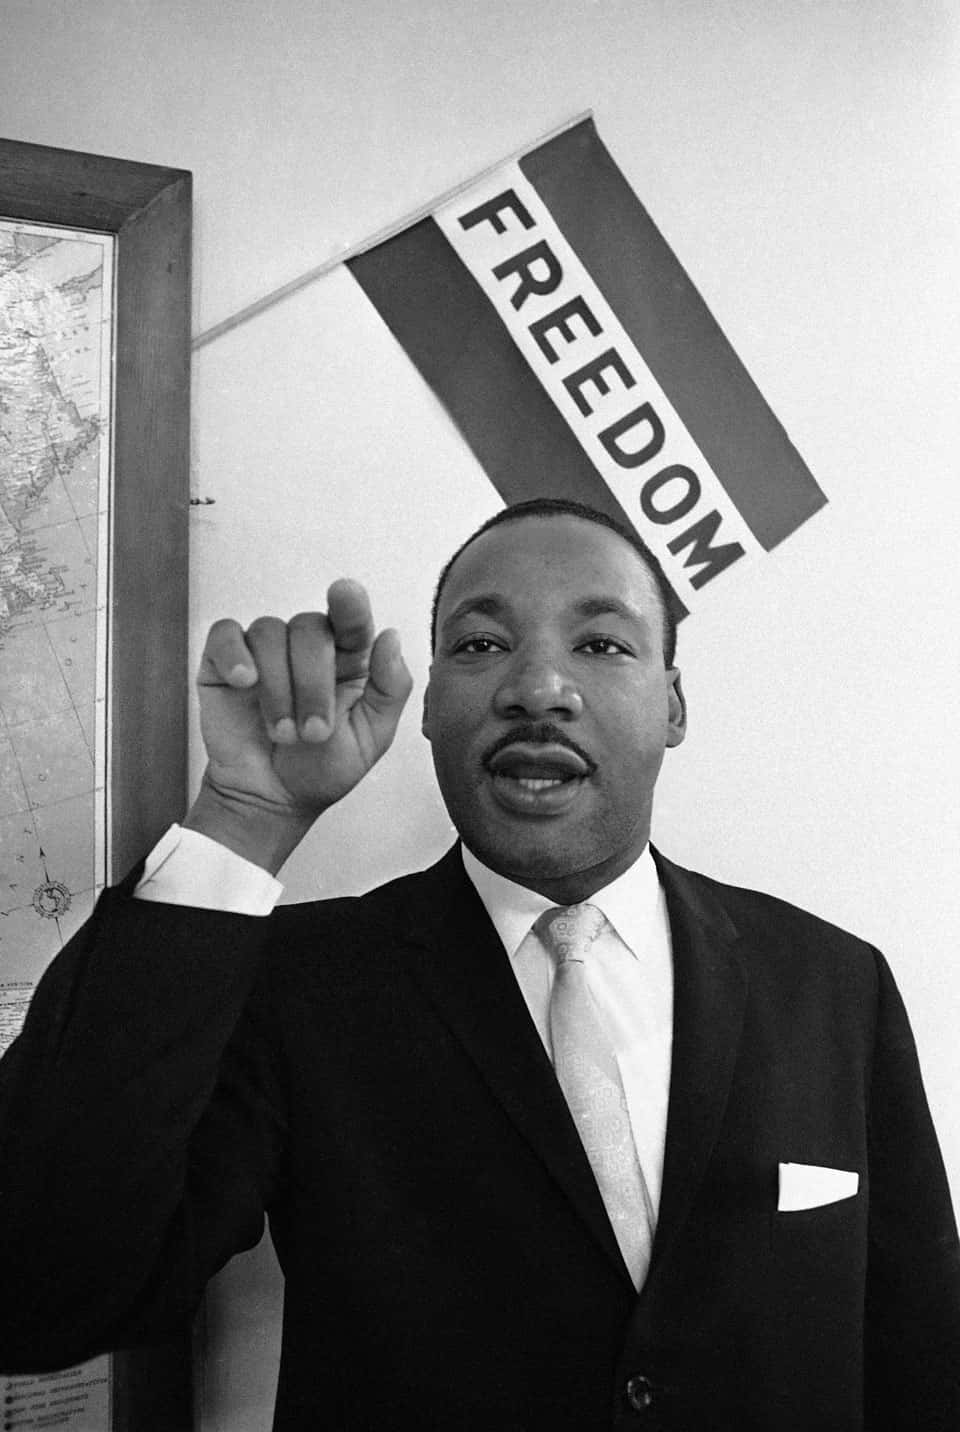 Derverstorbene Bürgerrechtsaktivist Martin Luther King Jr. Kämpft Für Gleichheit Und Gerechtigkeit In Amerika.